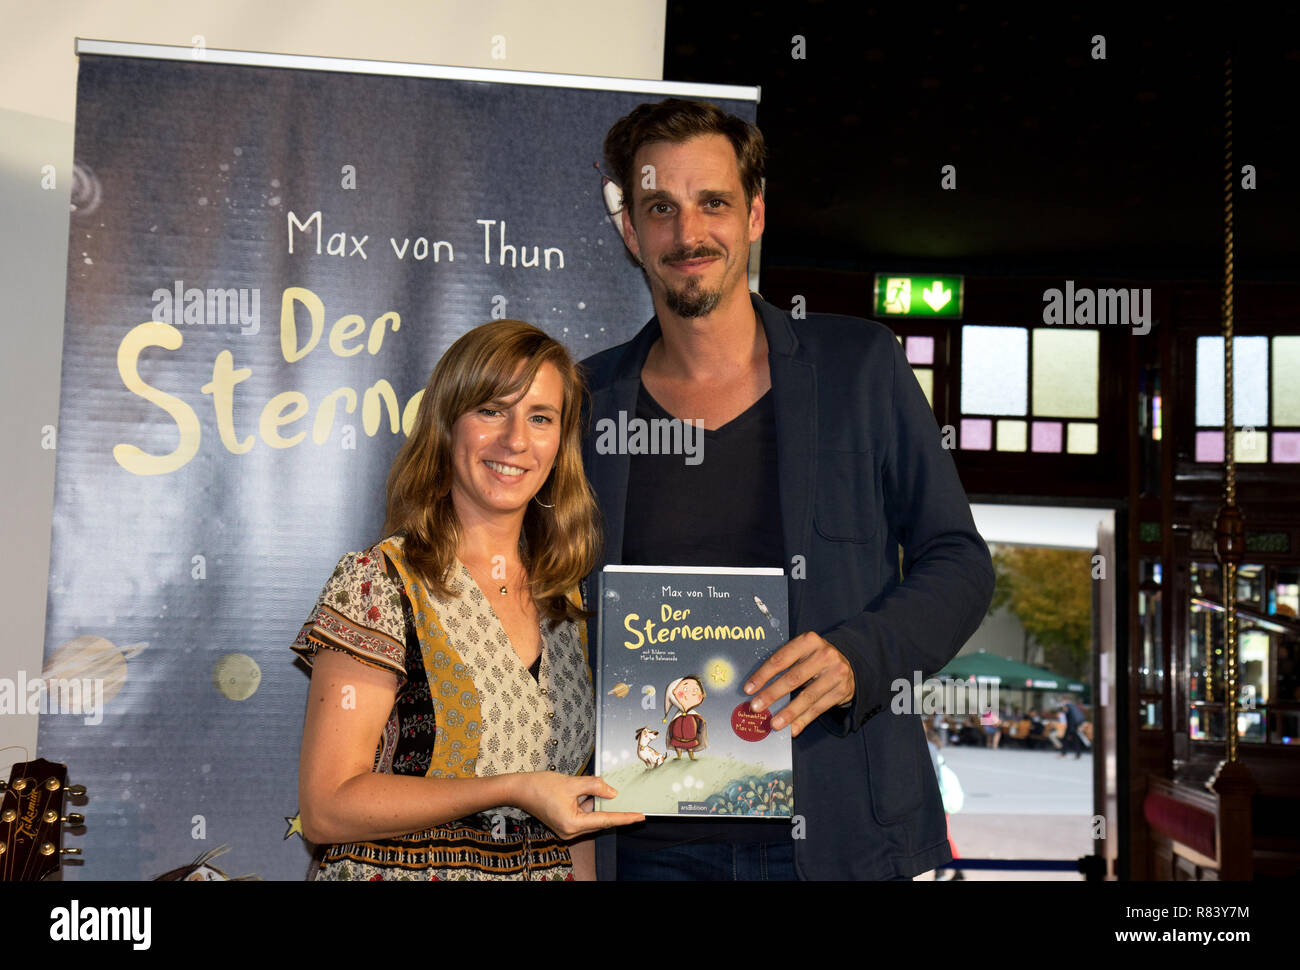 Der Schriftsteller Max von Thun präsentiert sein Buch 'Der Sternenmann" auf der Buchmesse 2018 in Frankfurt am Main Deutschland während einer Lesung mit dem Illustrator Stockfoto